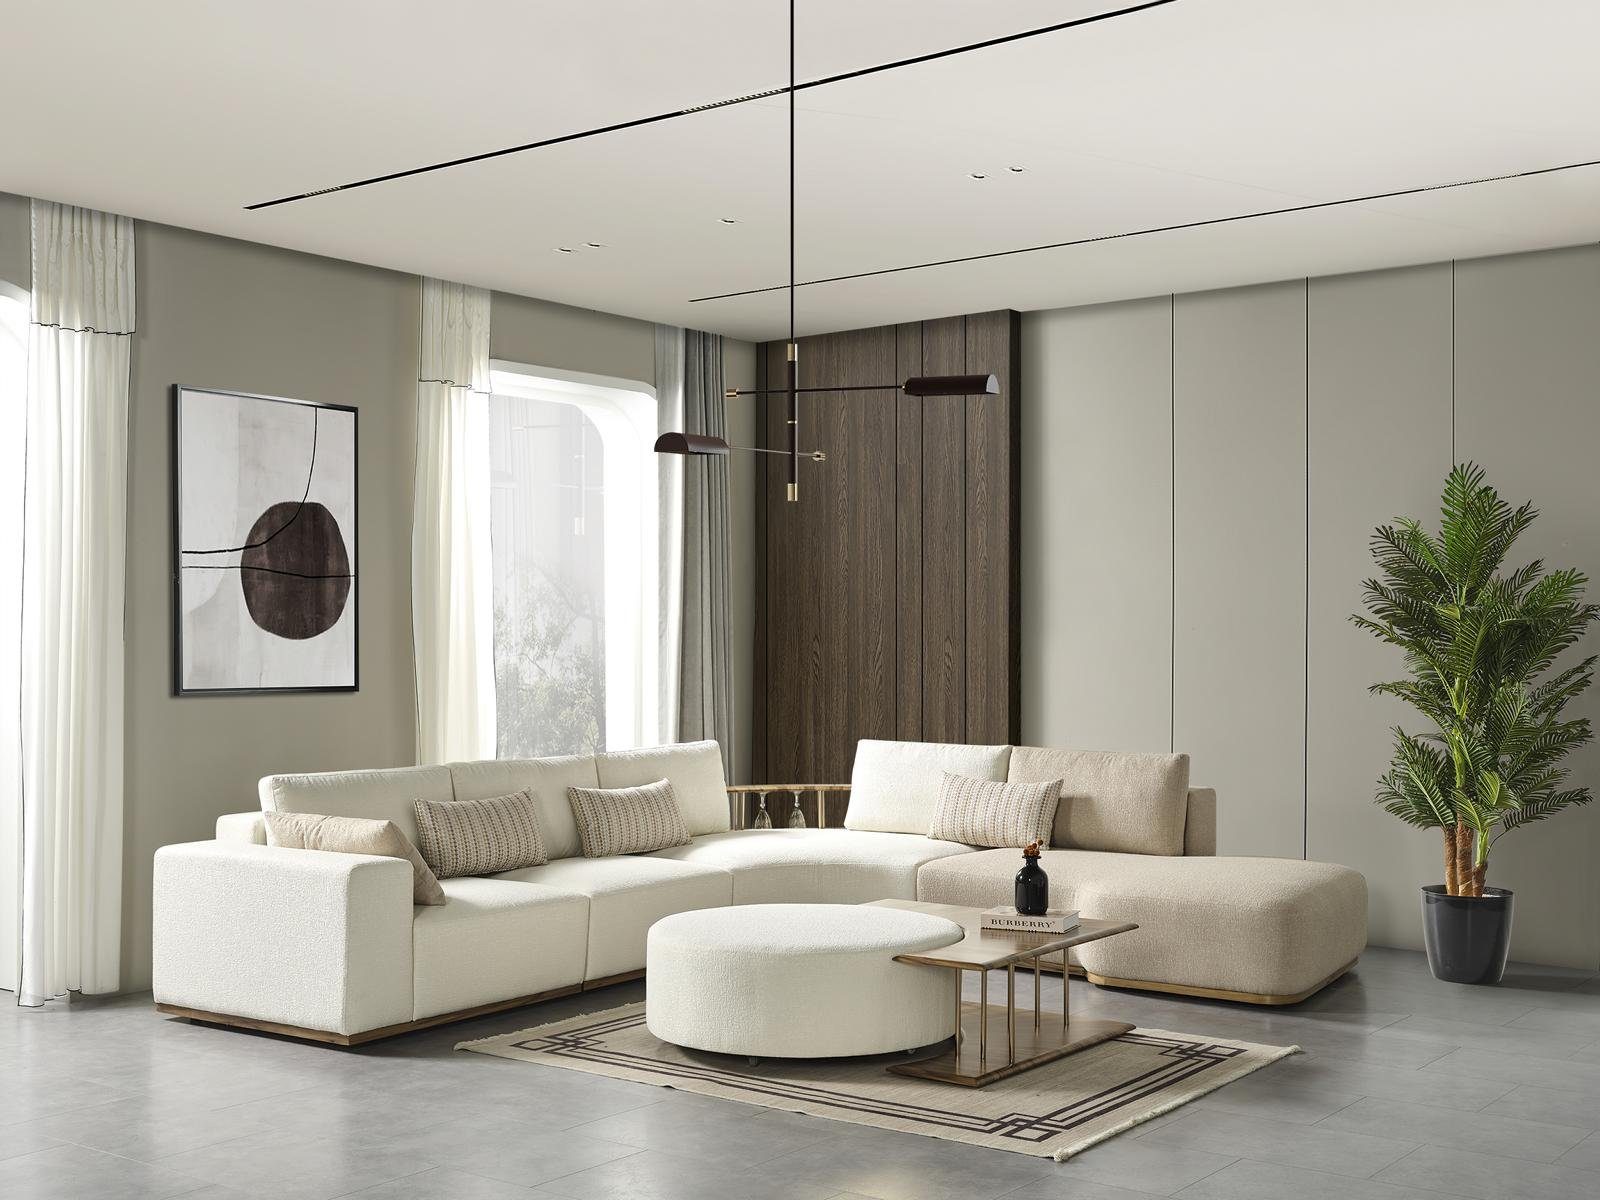 JVmoebel Hocker neu Design mit Polster weiß Textil Modern Wohnzimmer Hocker Holz